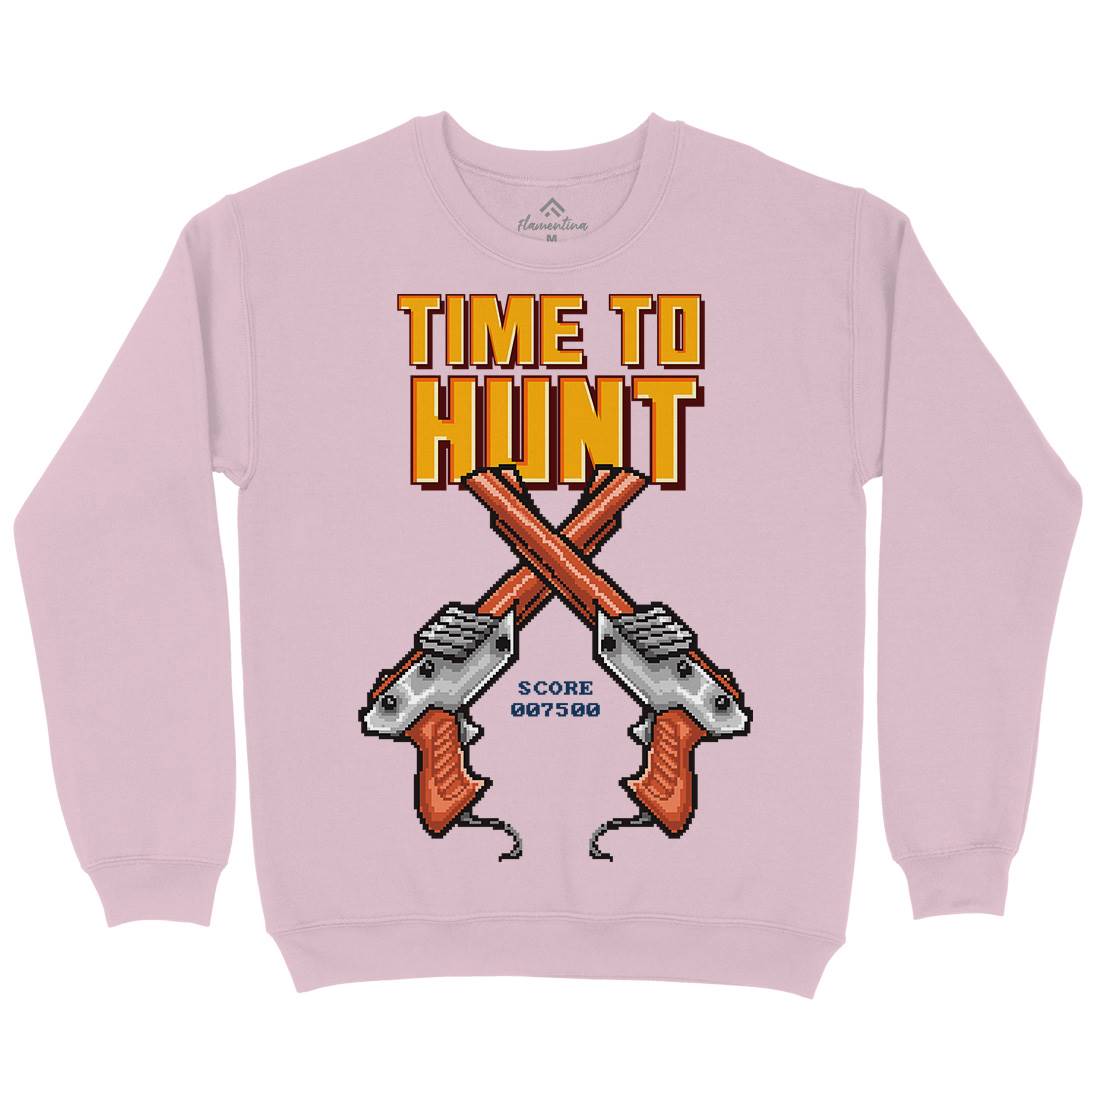 Time To Hunt Kids Crew Neck Sweatshirt Geek B971